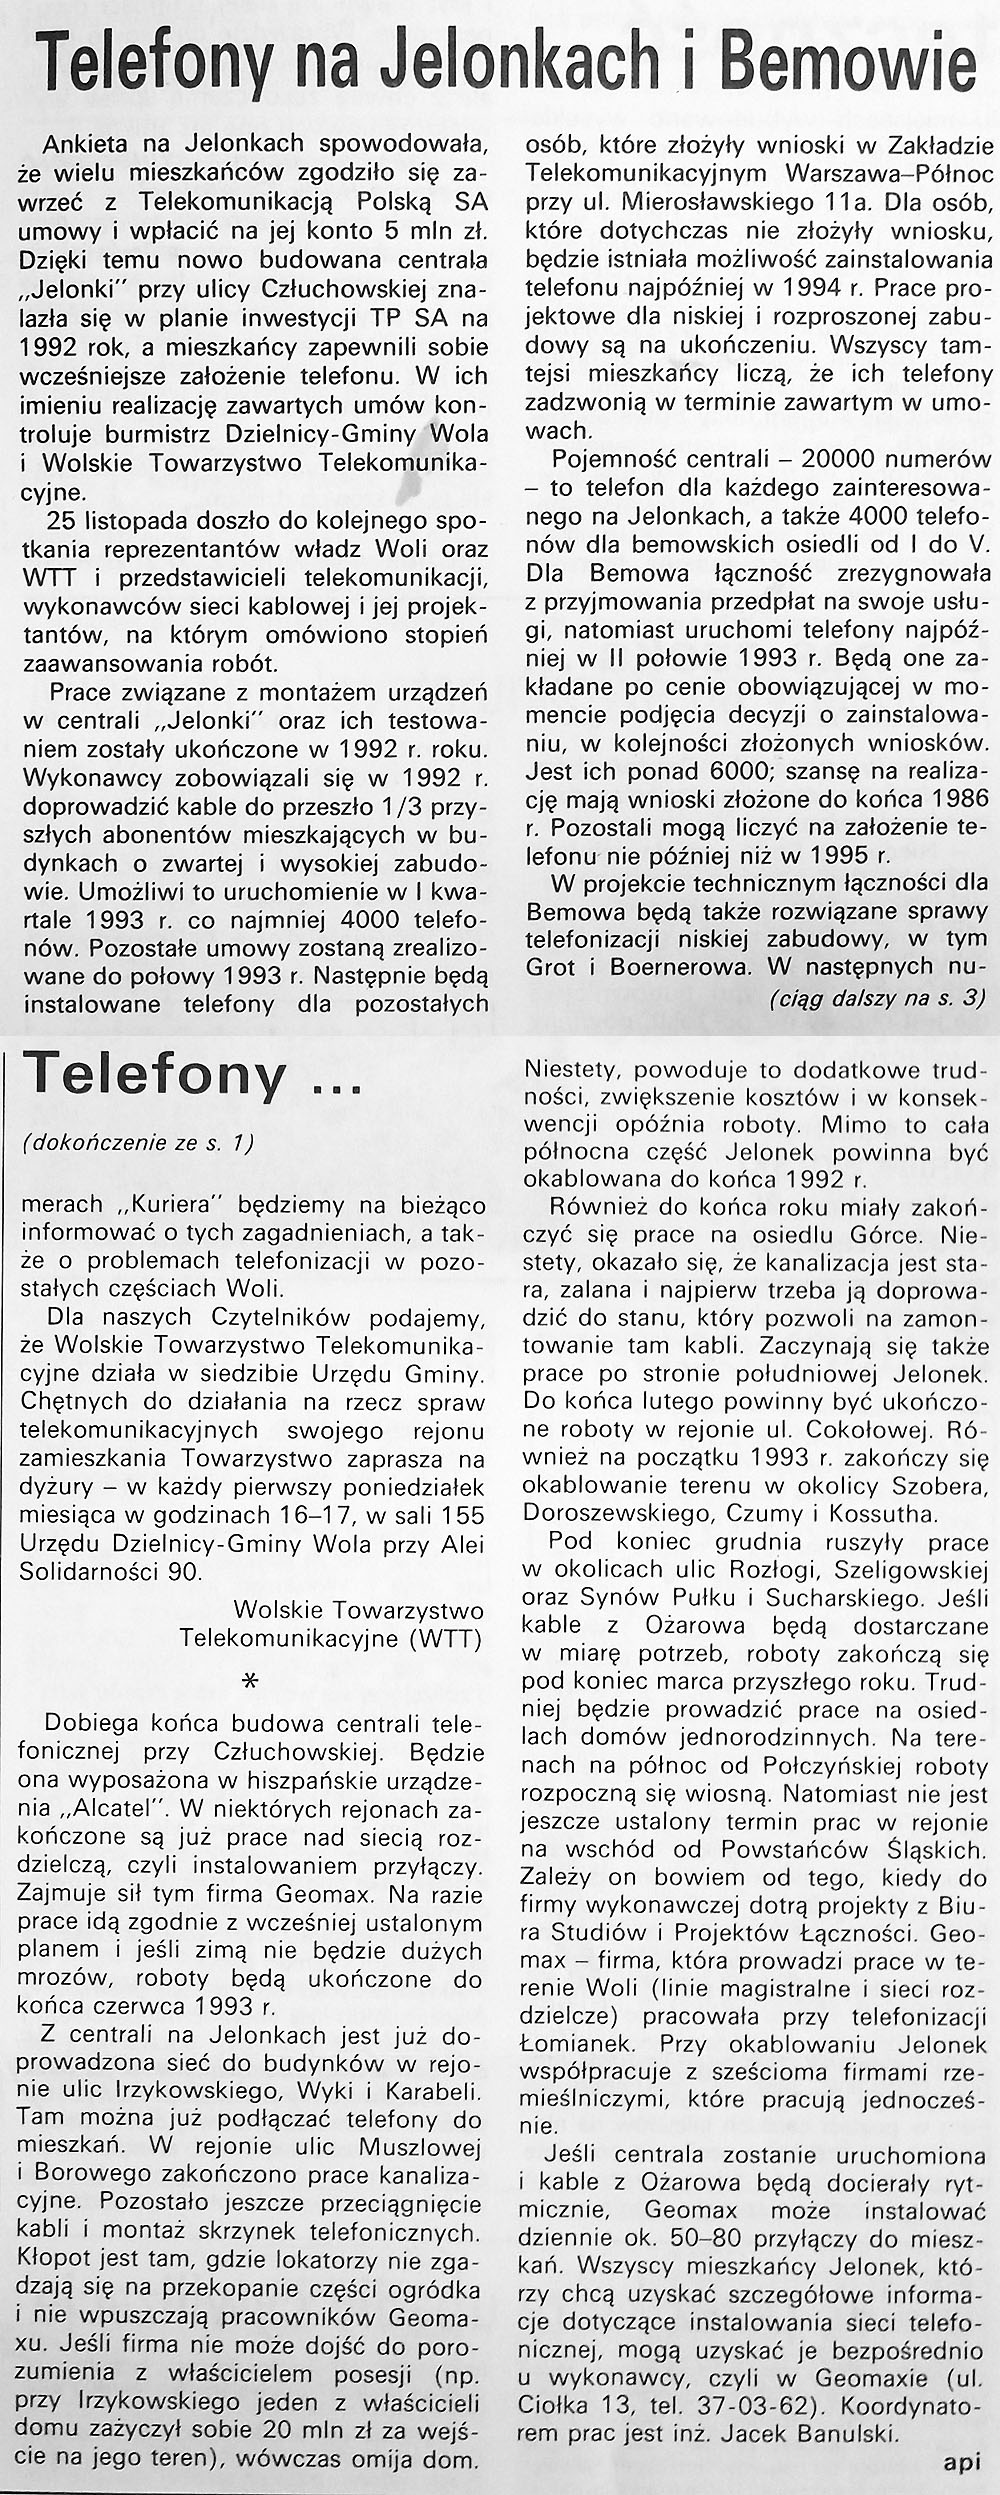 Kurier Wolski 2(5)/1992